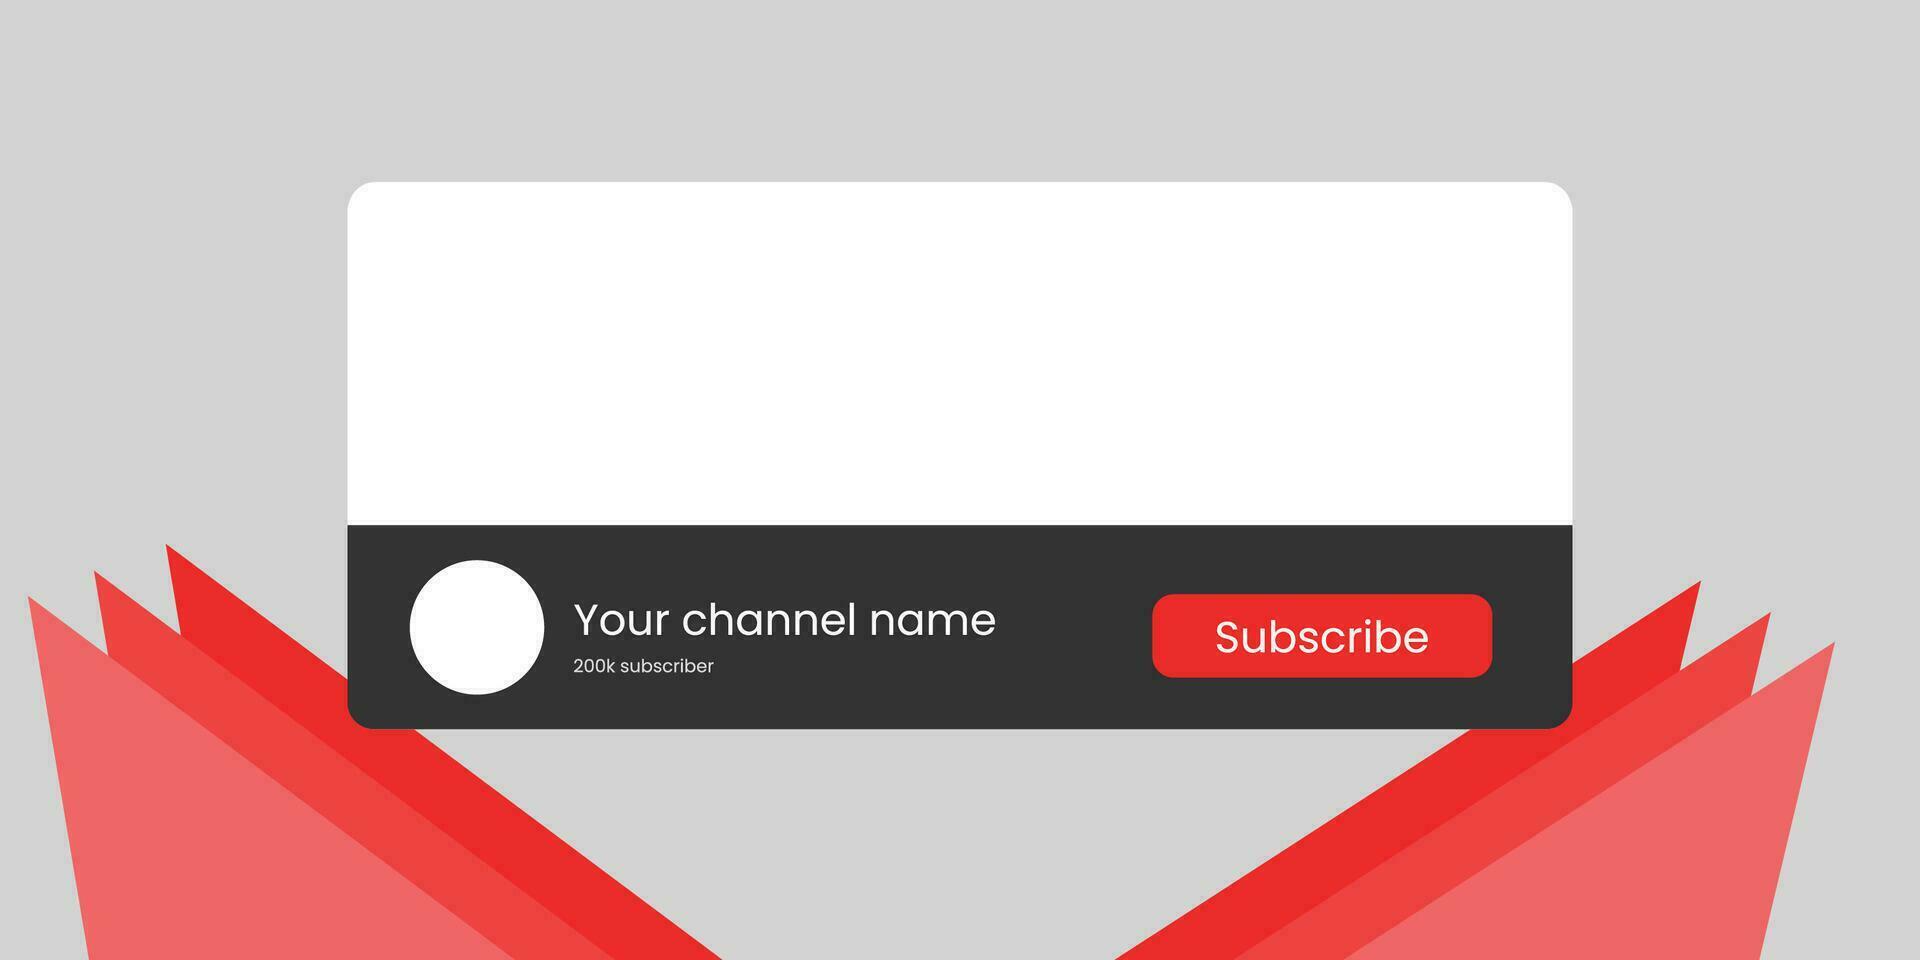 Youtube canal nome mais baixo terceiro com conteúdo espaço reservado. espaço reservado para canal logotipo. vetor ilustração